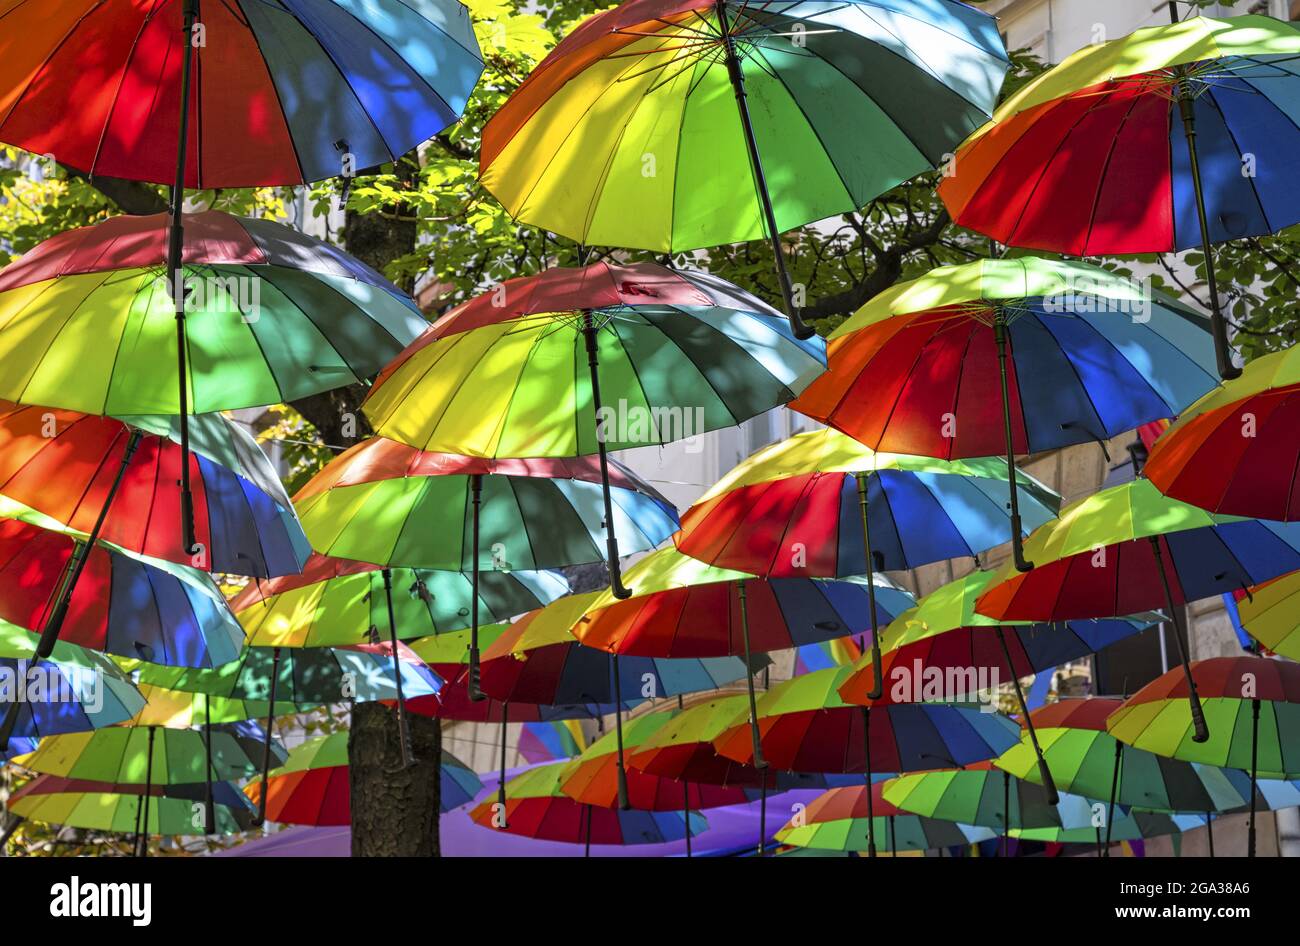 Une abondance de parapluies aux rayures colorées de l'arc-en-ciel s'accrochent sur une rue avec le feuillage de l'arbre pendant la semaine gay Pride à Paris ; Paris, France Banque D'Images